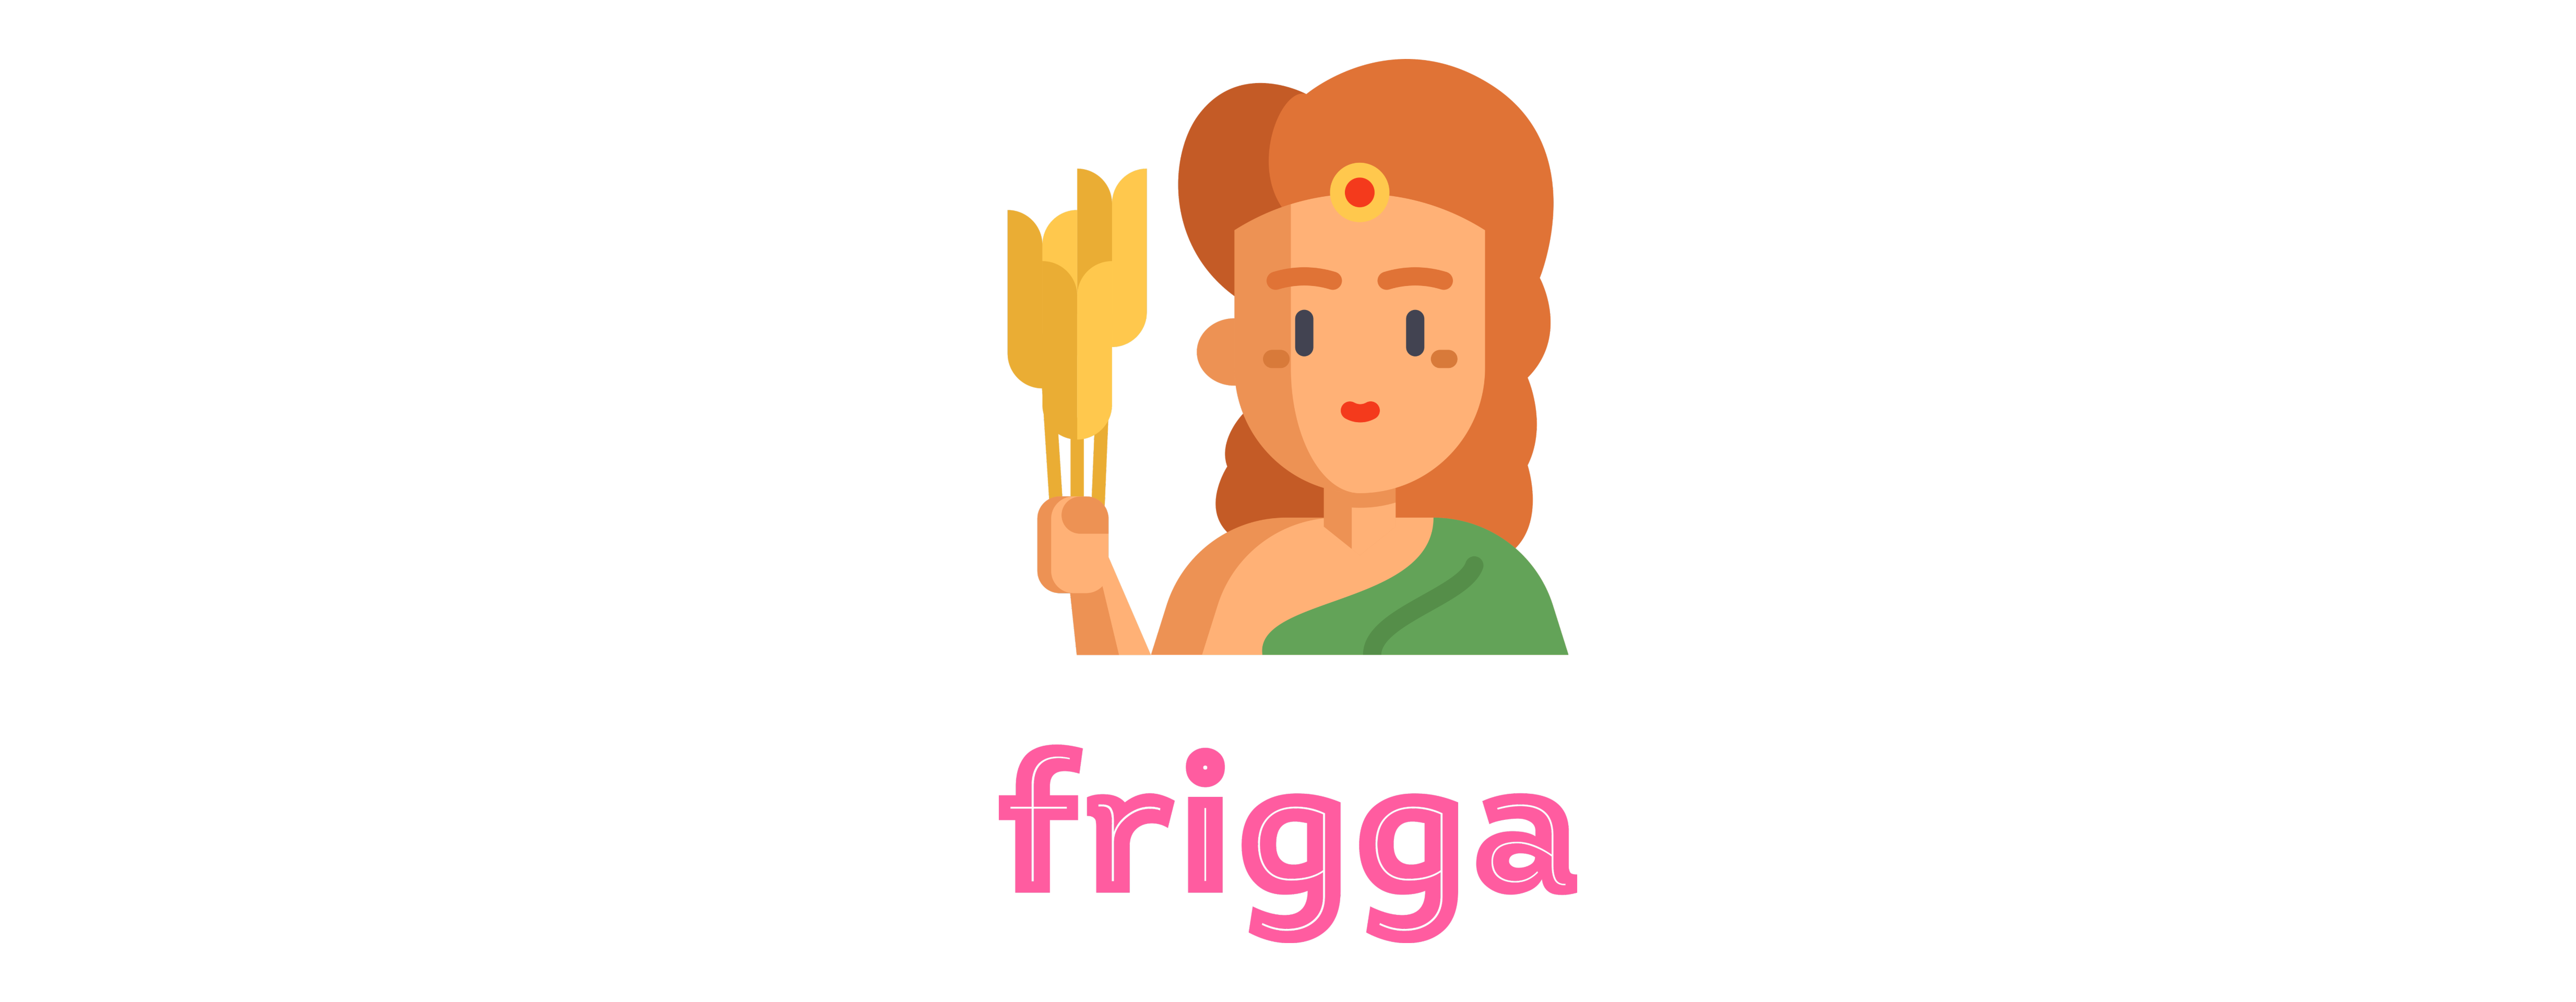 frigga-logo